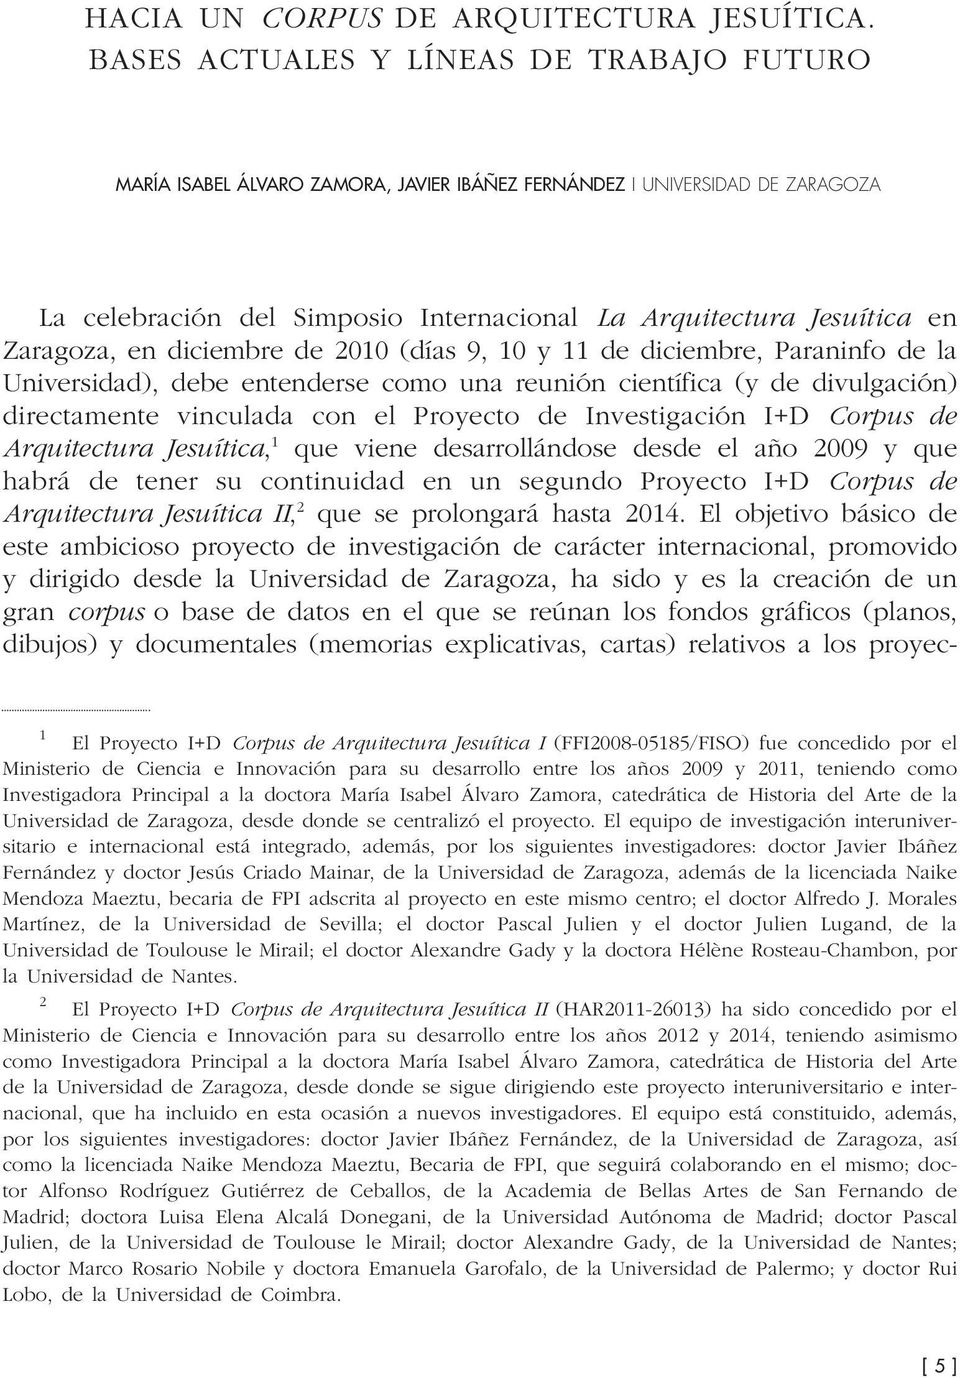 Zaragoza, en diciembre de 2010 (días 9, 10 y 11 de diciembre, Paraninfo de la Universidad), debe entenderse como una reunión científica (y de divulgación) directamente vinculada con el Proyecto de